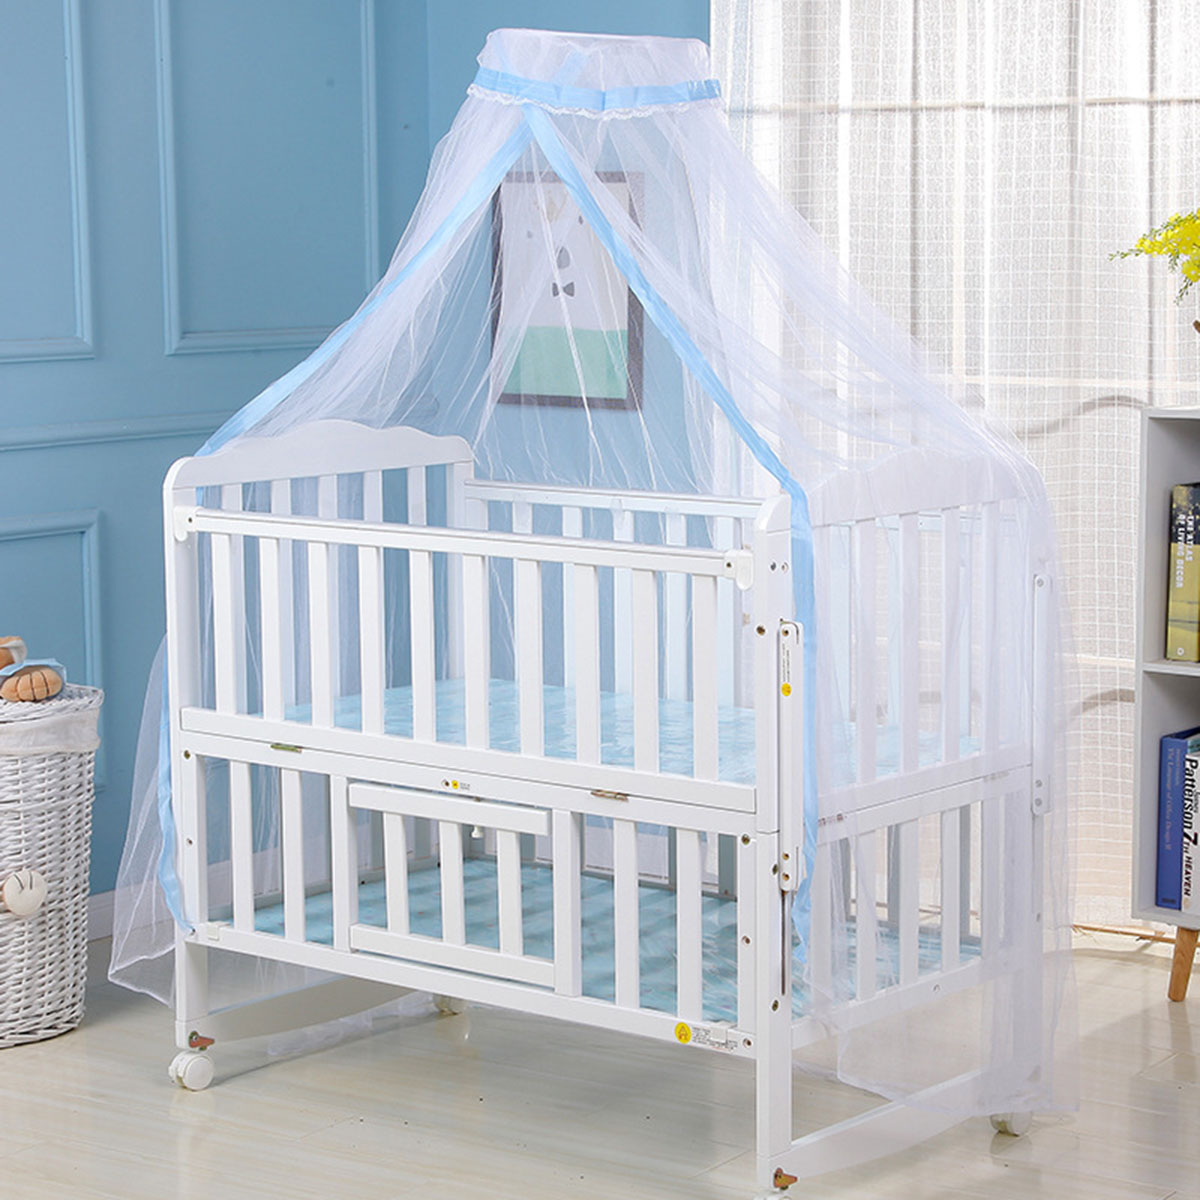 Myggenet baby seng myggenet mesh kuppel gardinet til småbørneseng barneseng baldakin blå hvid farve dropshipp: Grøn